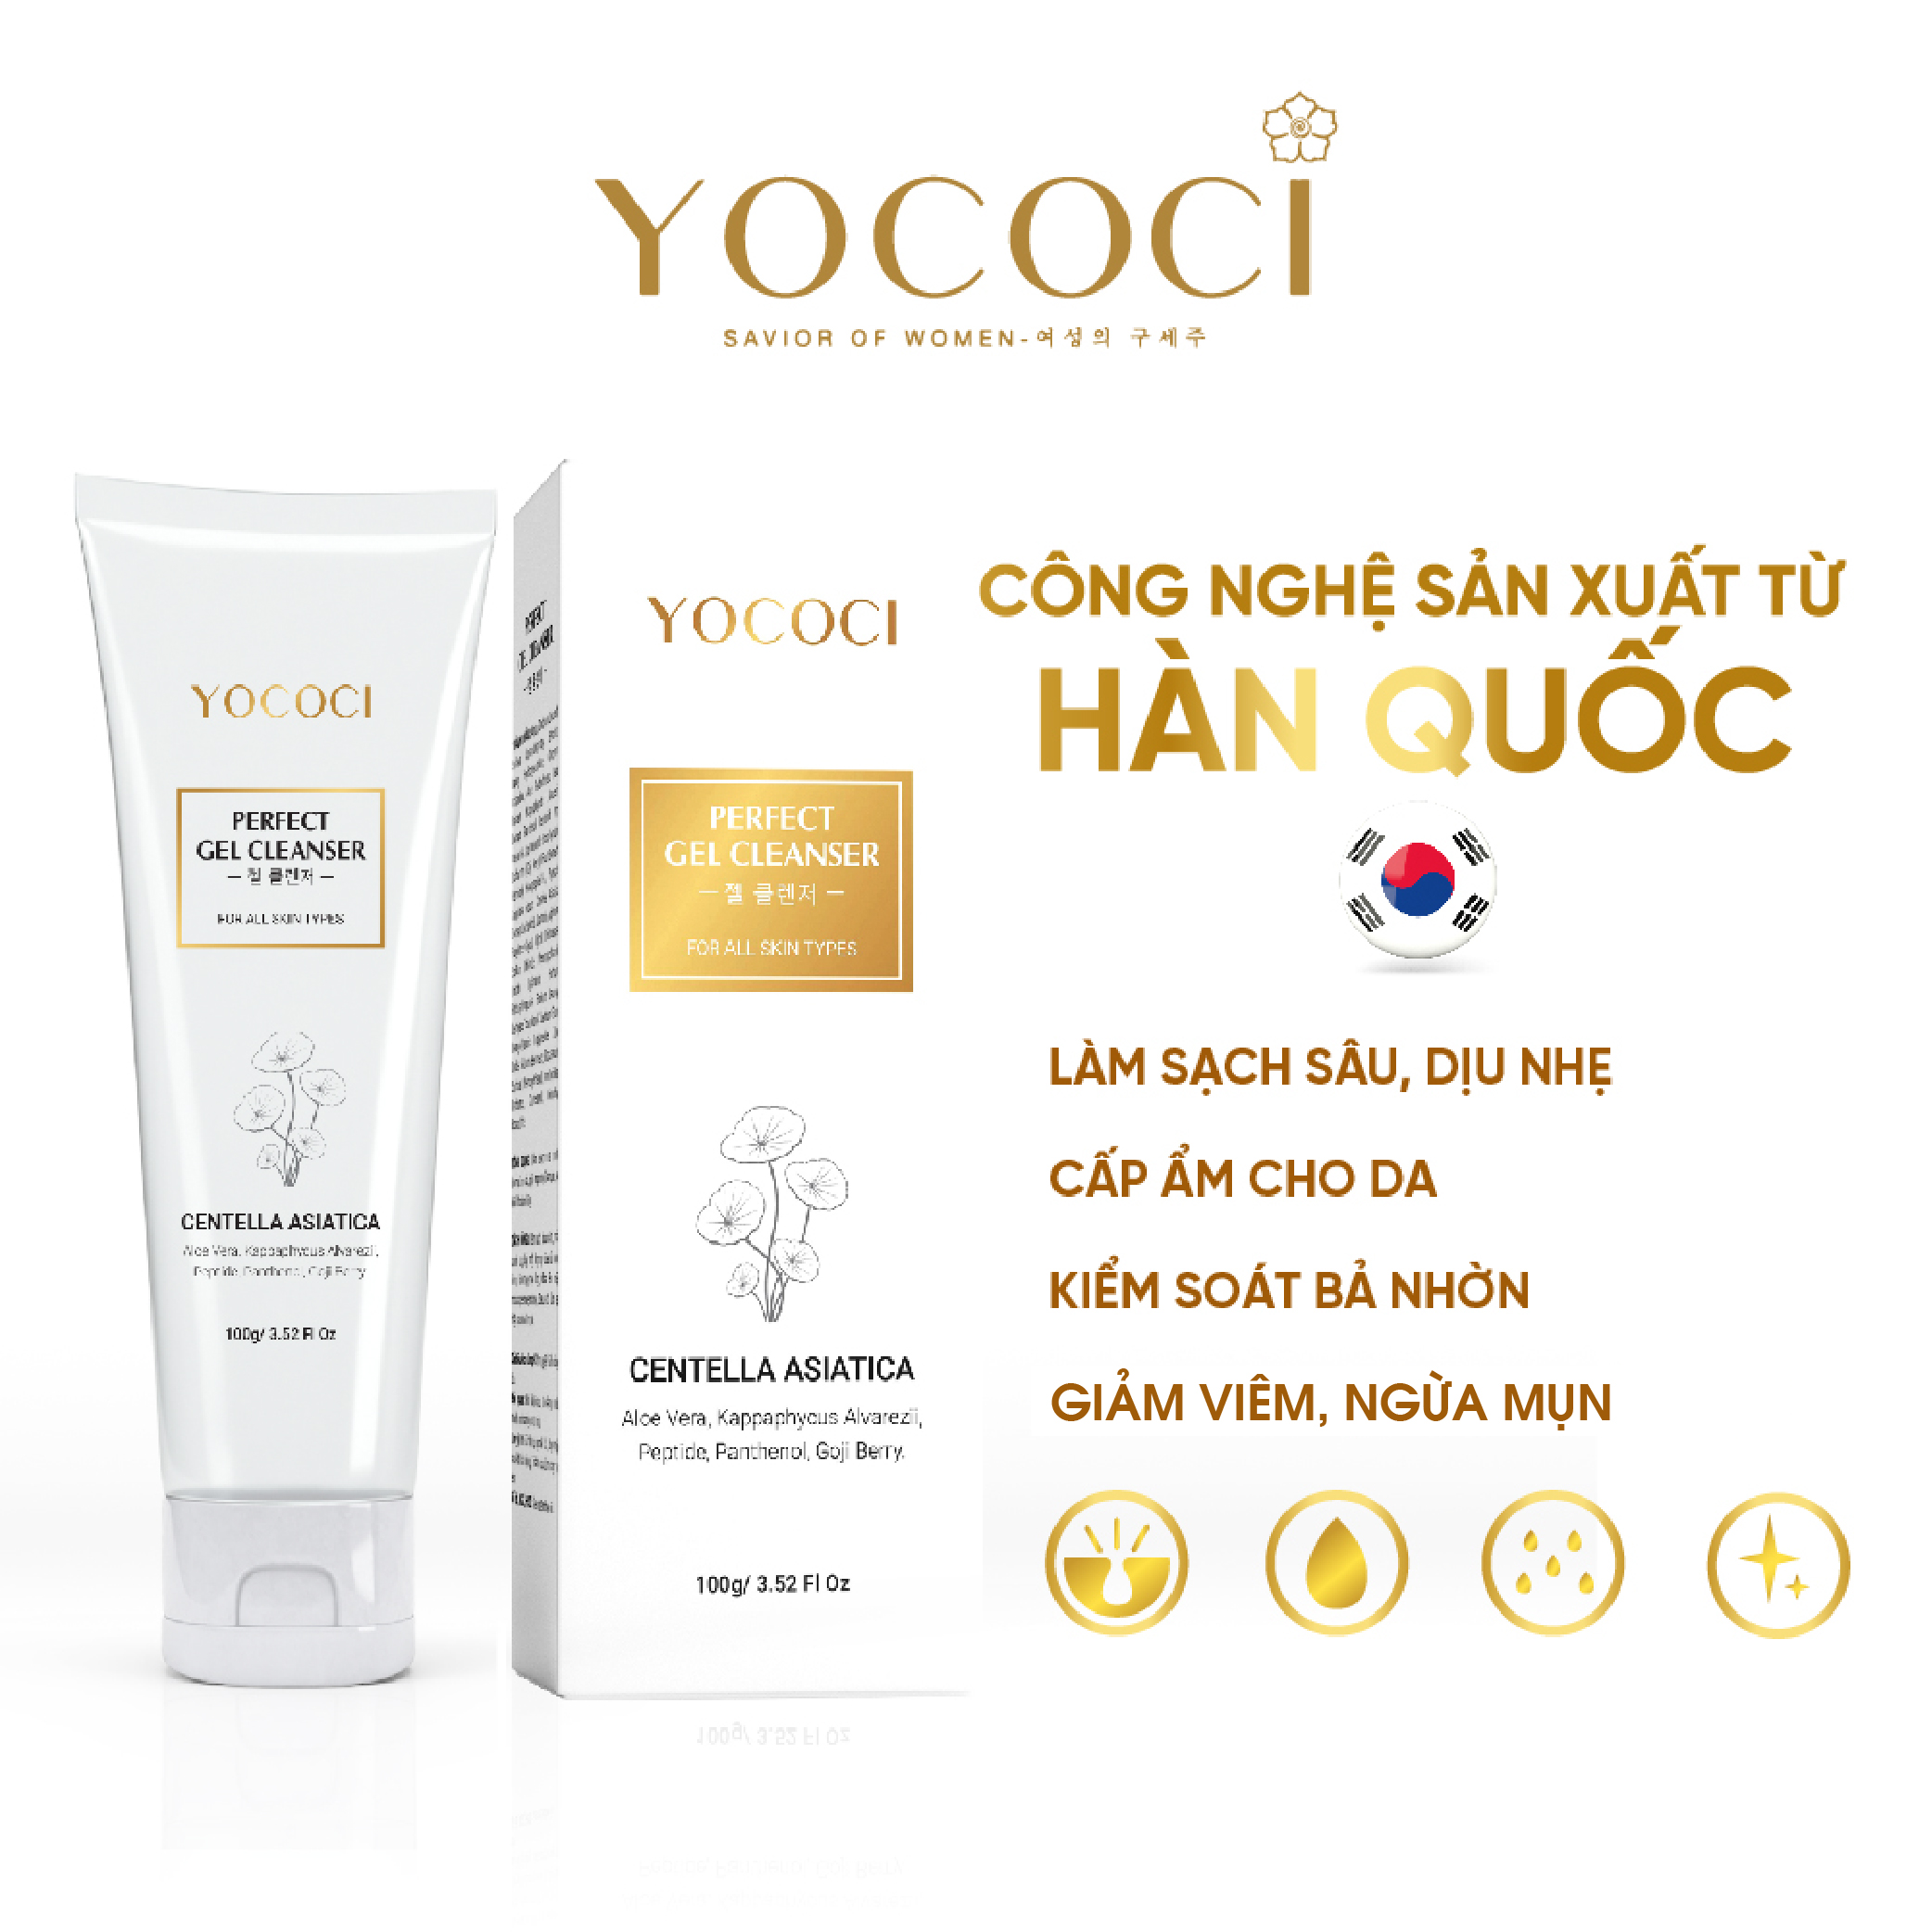 Bộ 2 sản phẩm làm sạch Yococi (Sửa Rửa Mặt 100g + Tẩy Trang 100g)